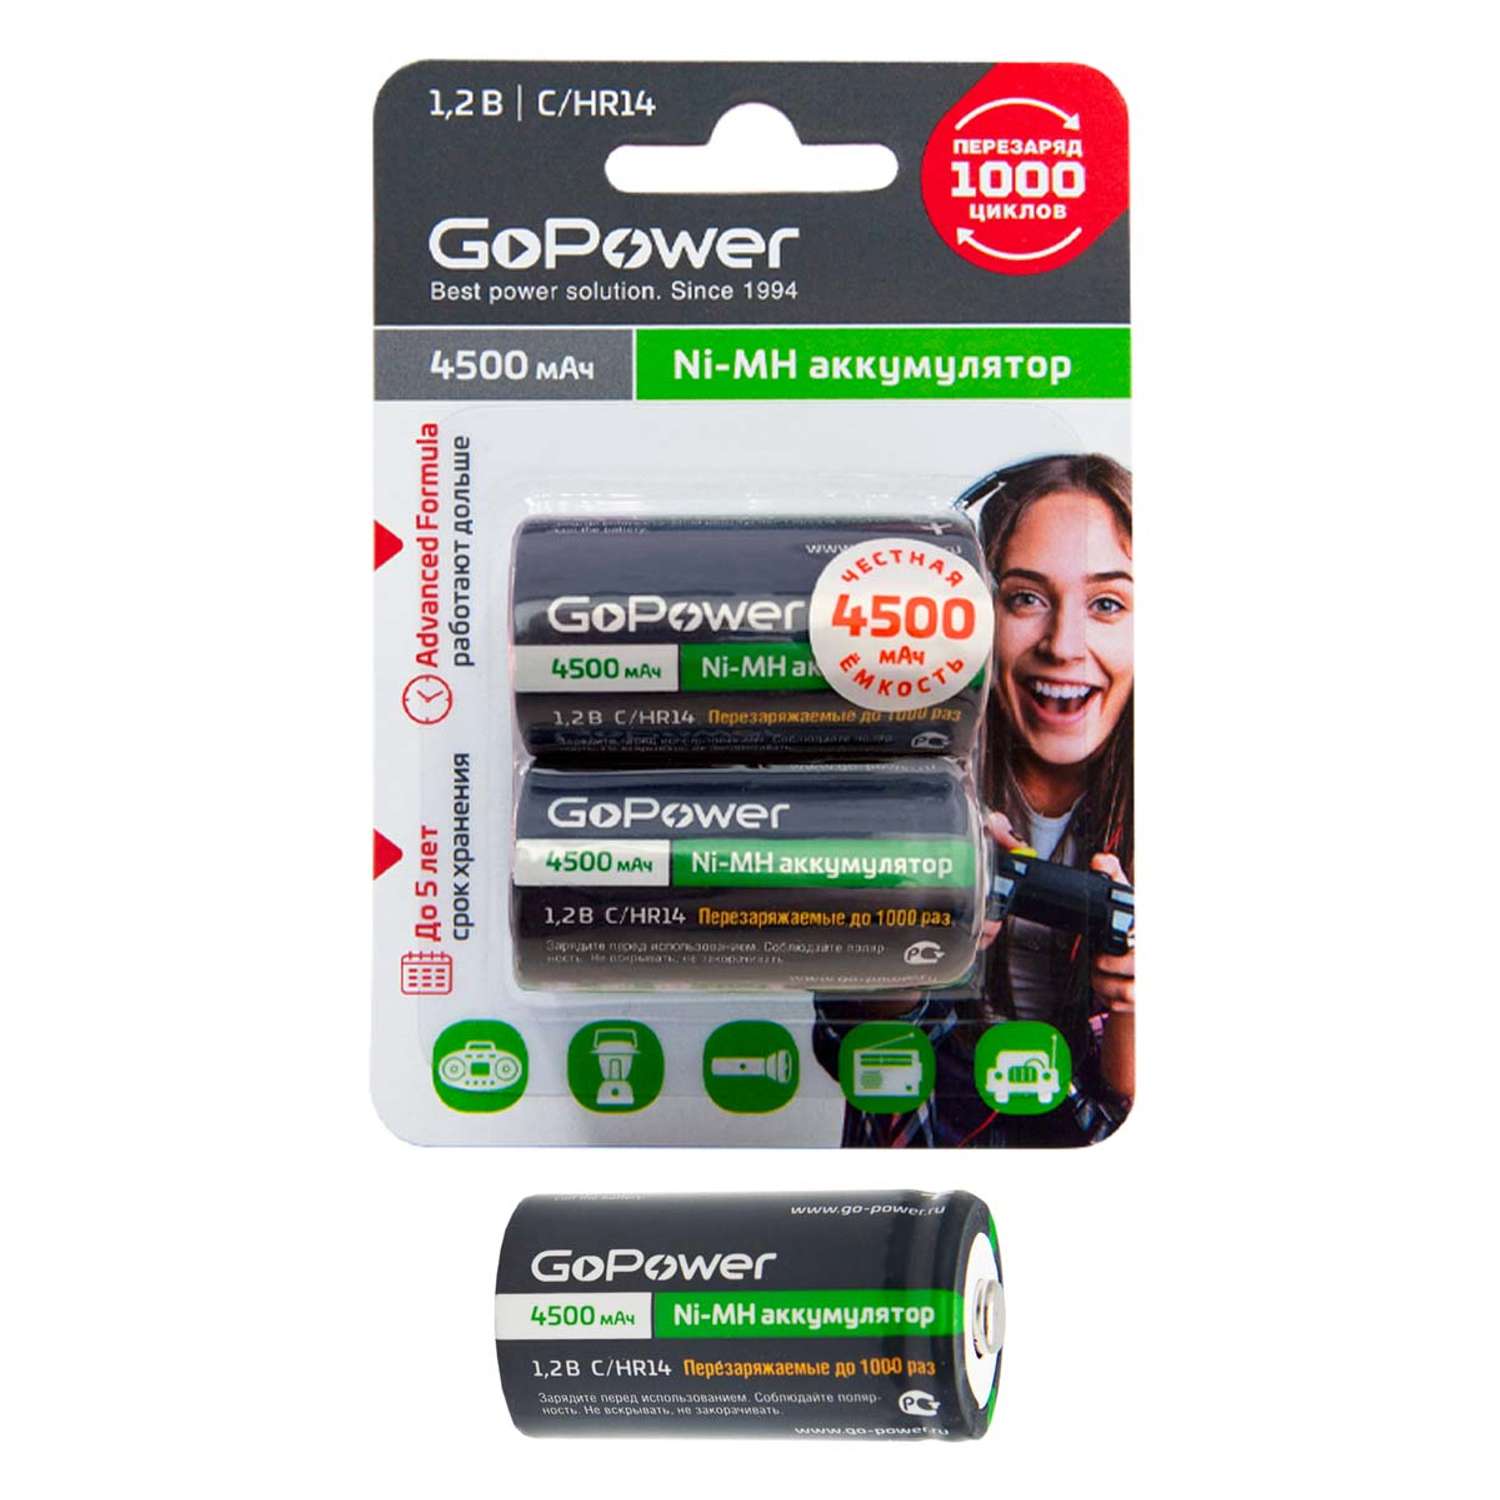 Аккумуляторные батарейки GoPower HR14 C BL2 NI-MH 4500mAh - фото 2